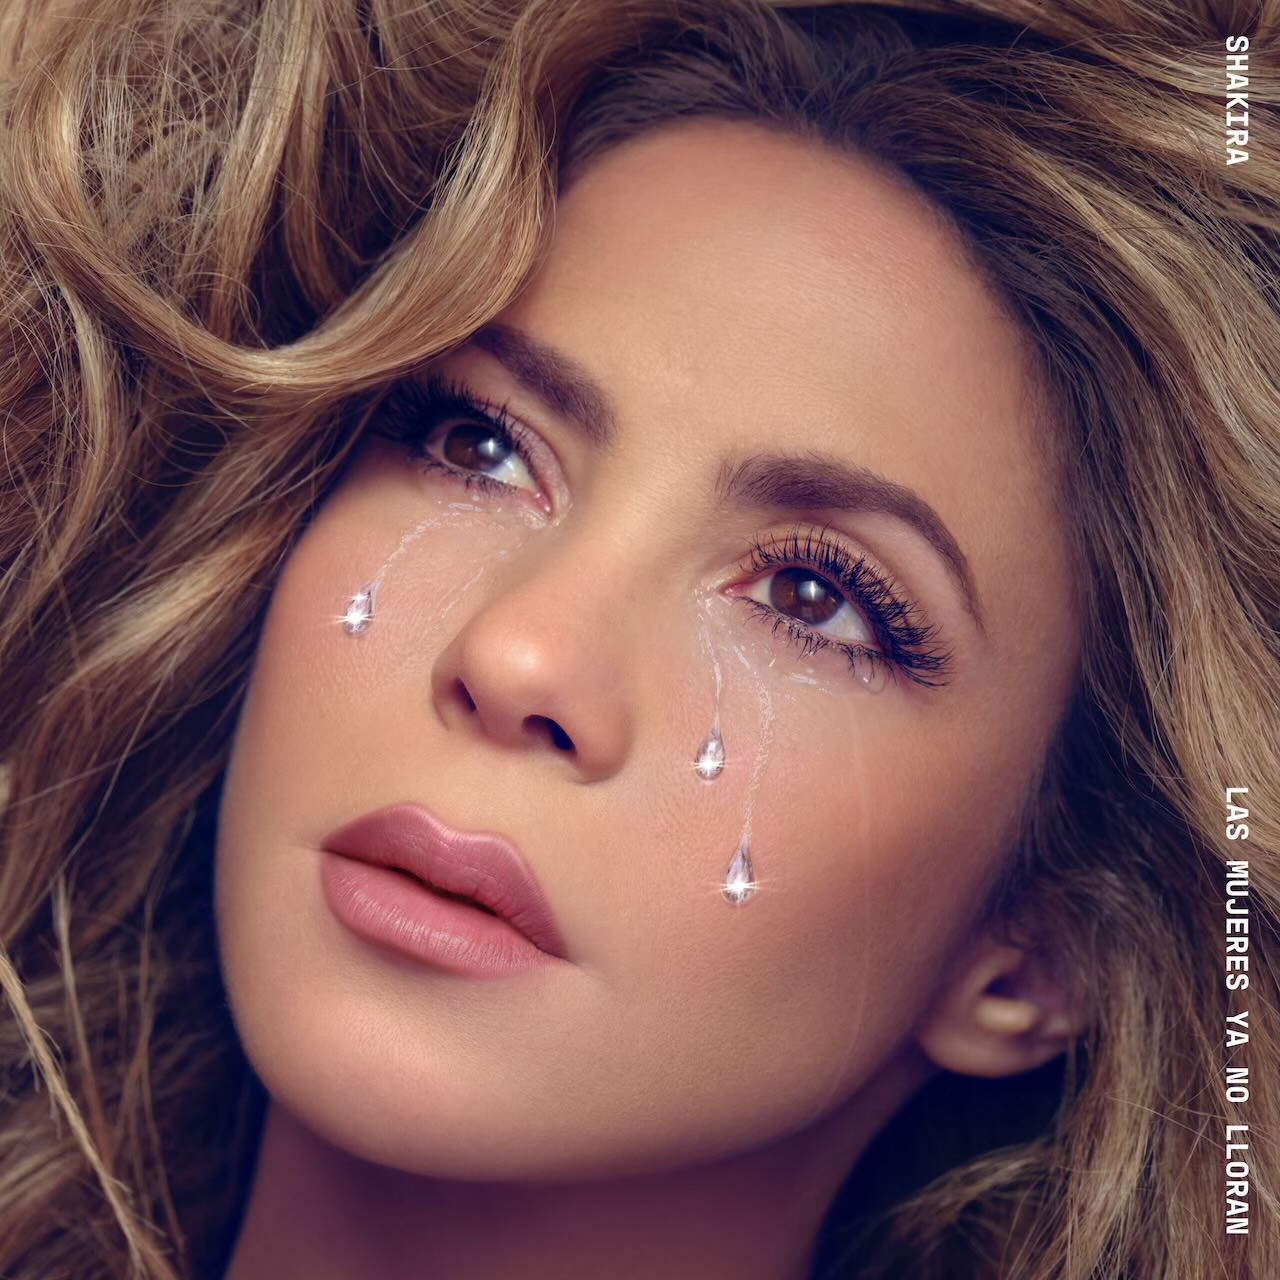 Shakira rompe récord con el álbum ‘Las mujeres ya no lloran’ sin haber sido lanzado: “Gracias por tanto”